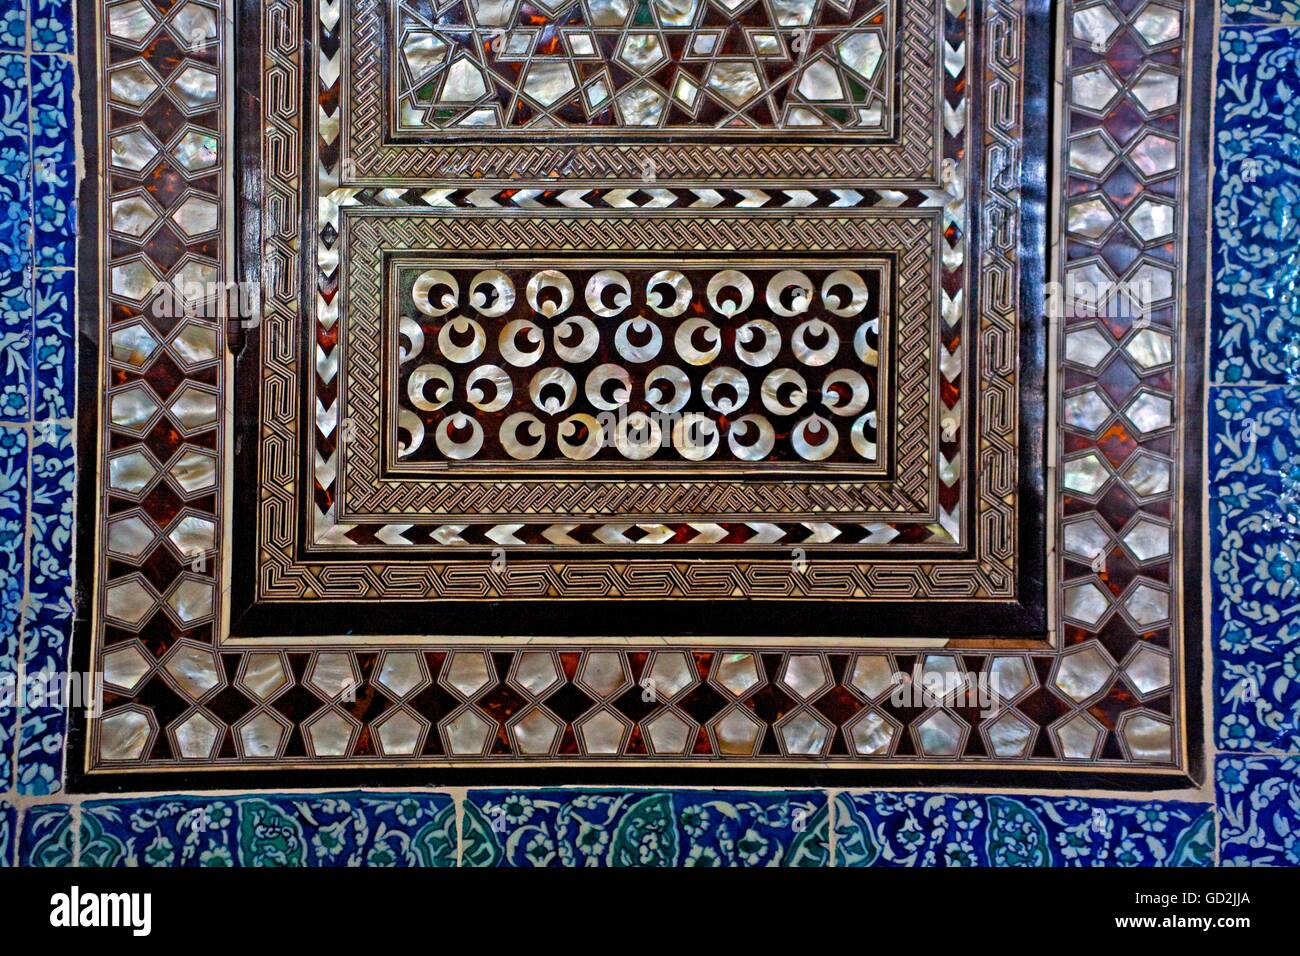 Les beaux-arts, l'Empire byzantin, d'ornements dans le palais de Topkapi, Istanbul, l'artiste n'a pas d'auteur pour être effacé Banque D'Images